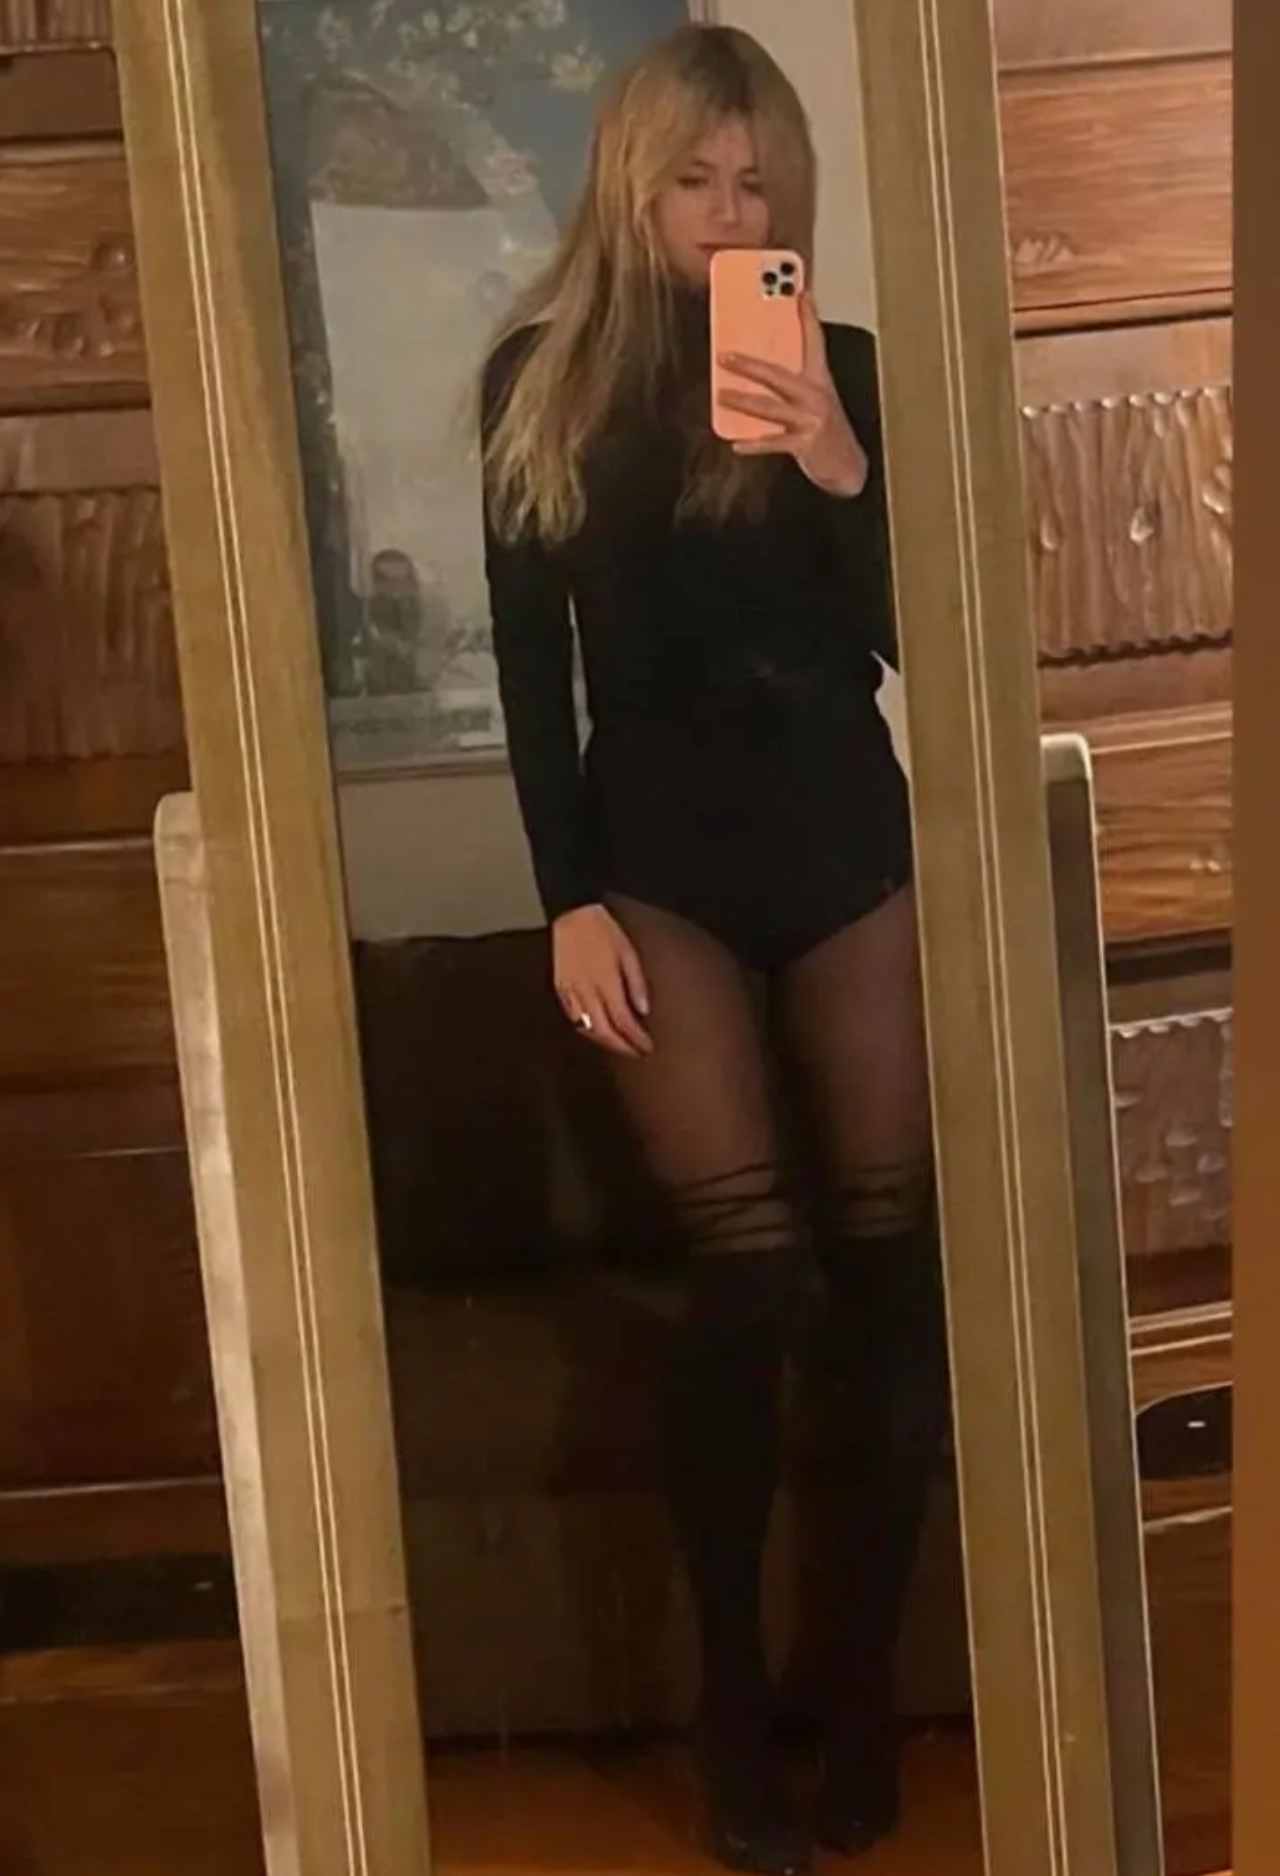 Camila Giorgi selfie